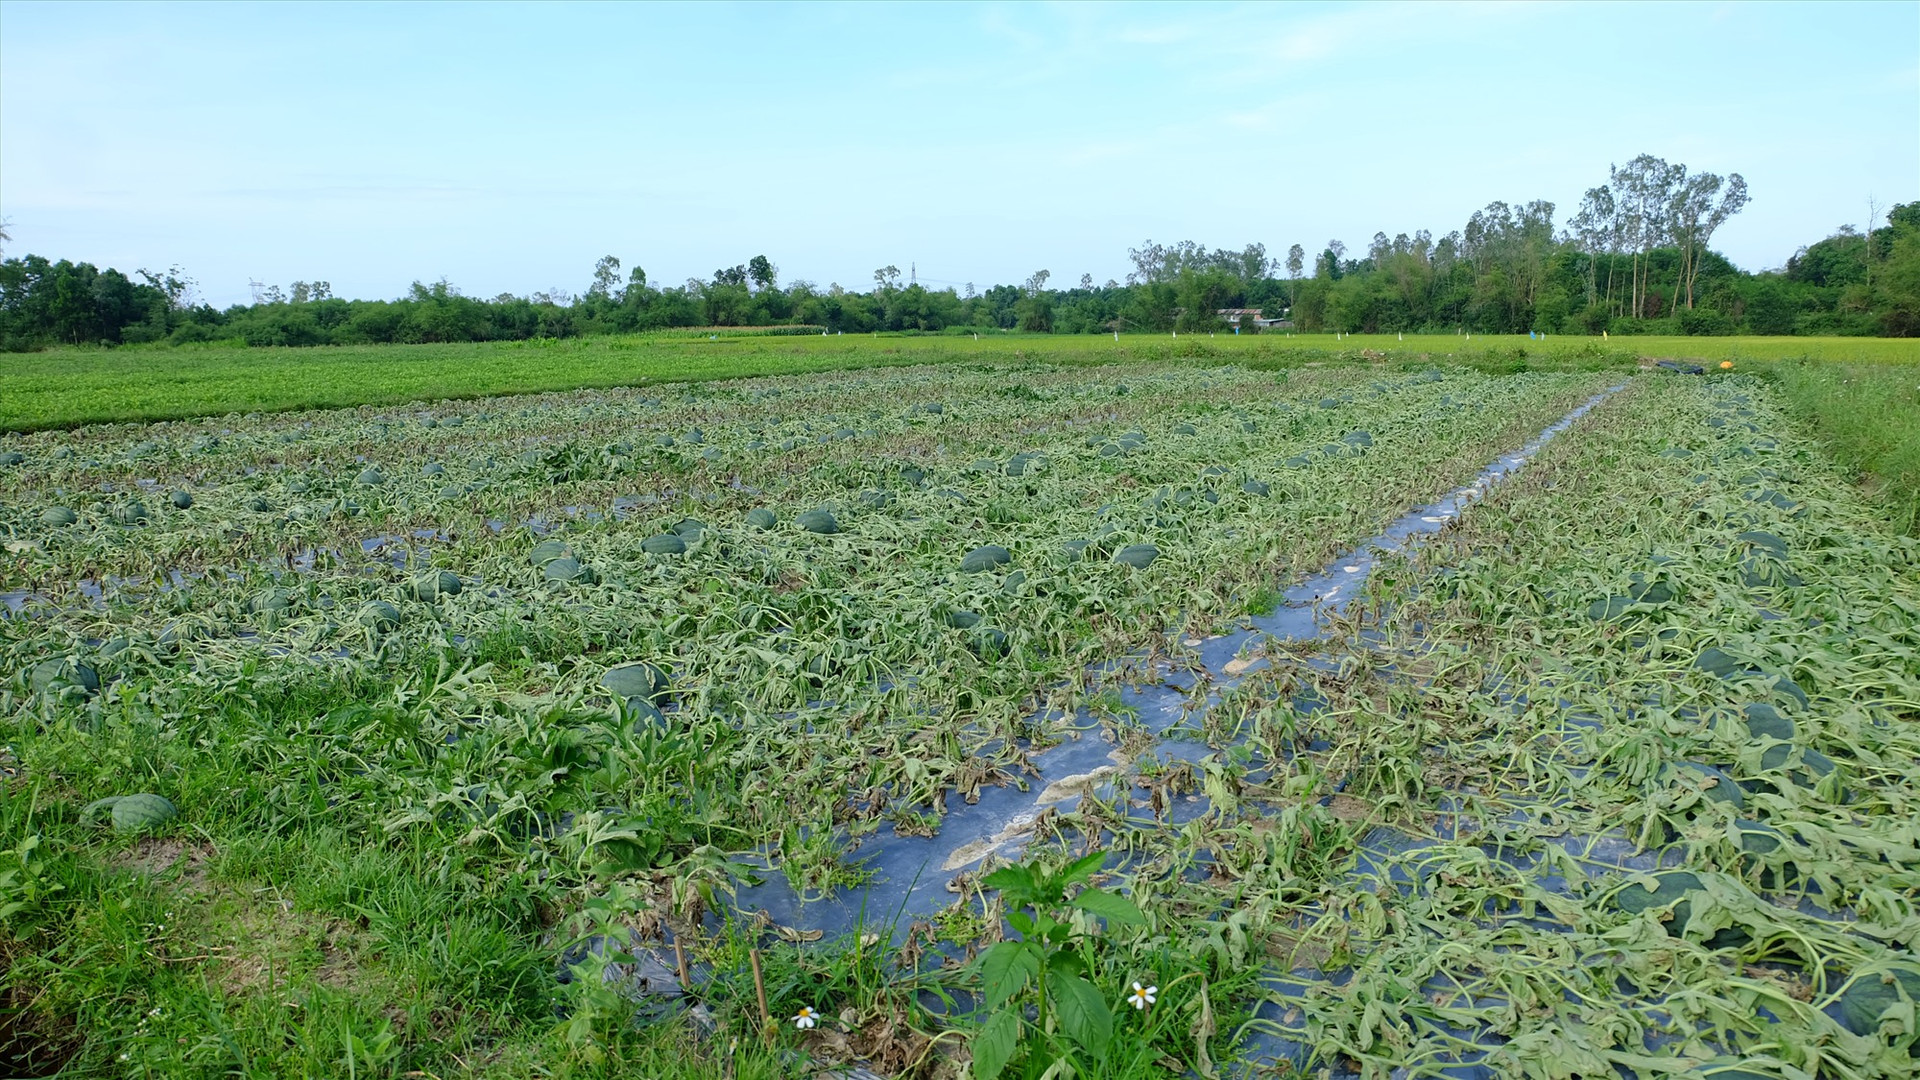 Phần lớn ruộng dưa ở Phú Ninh bị héo lá, khô dây, trơ quả khi gặp nắng to sau đợt mưa lớn vừa qua. Ảnh: M.L